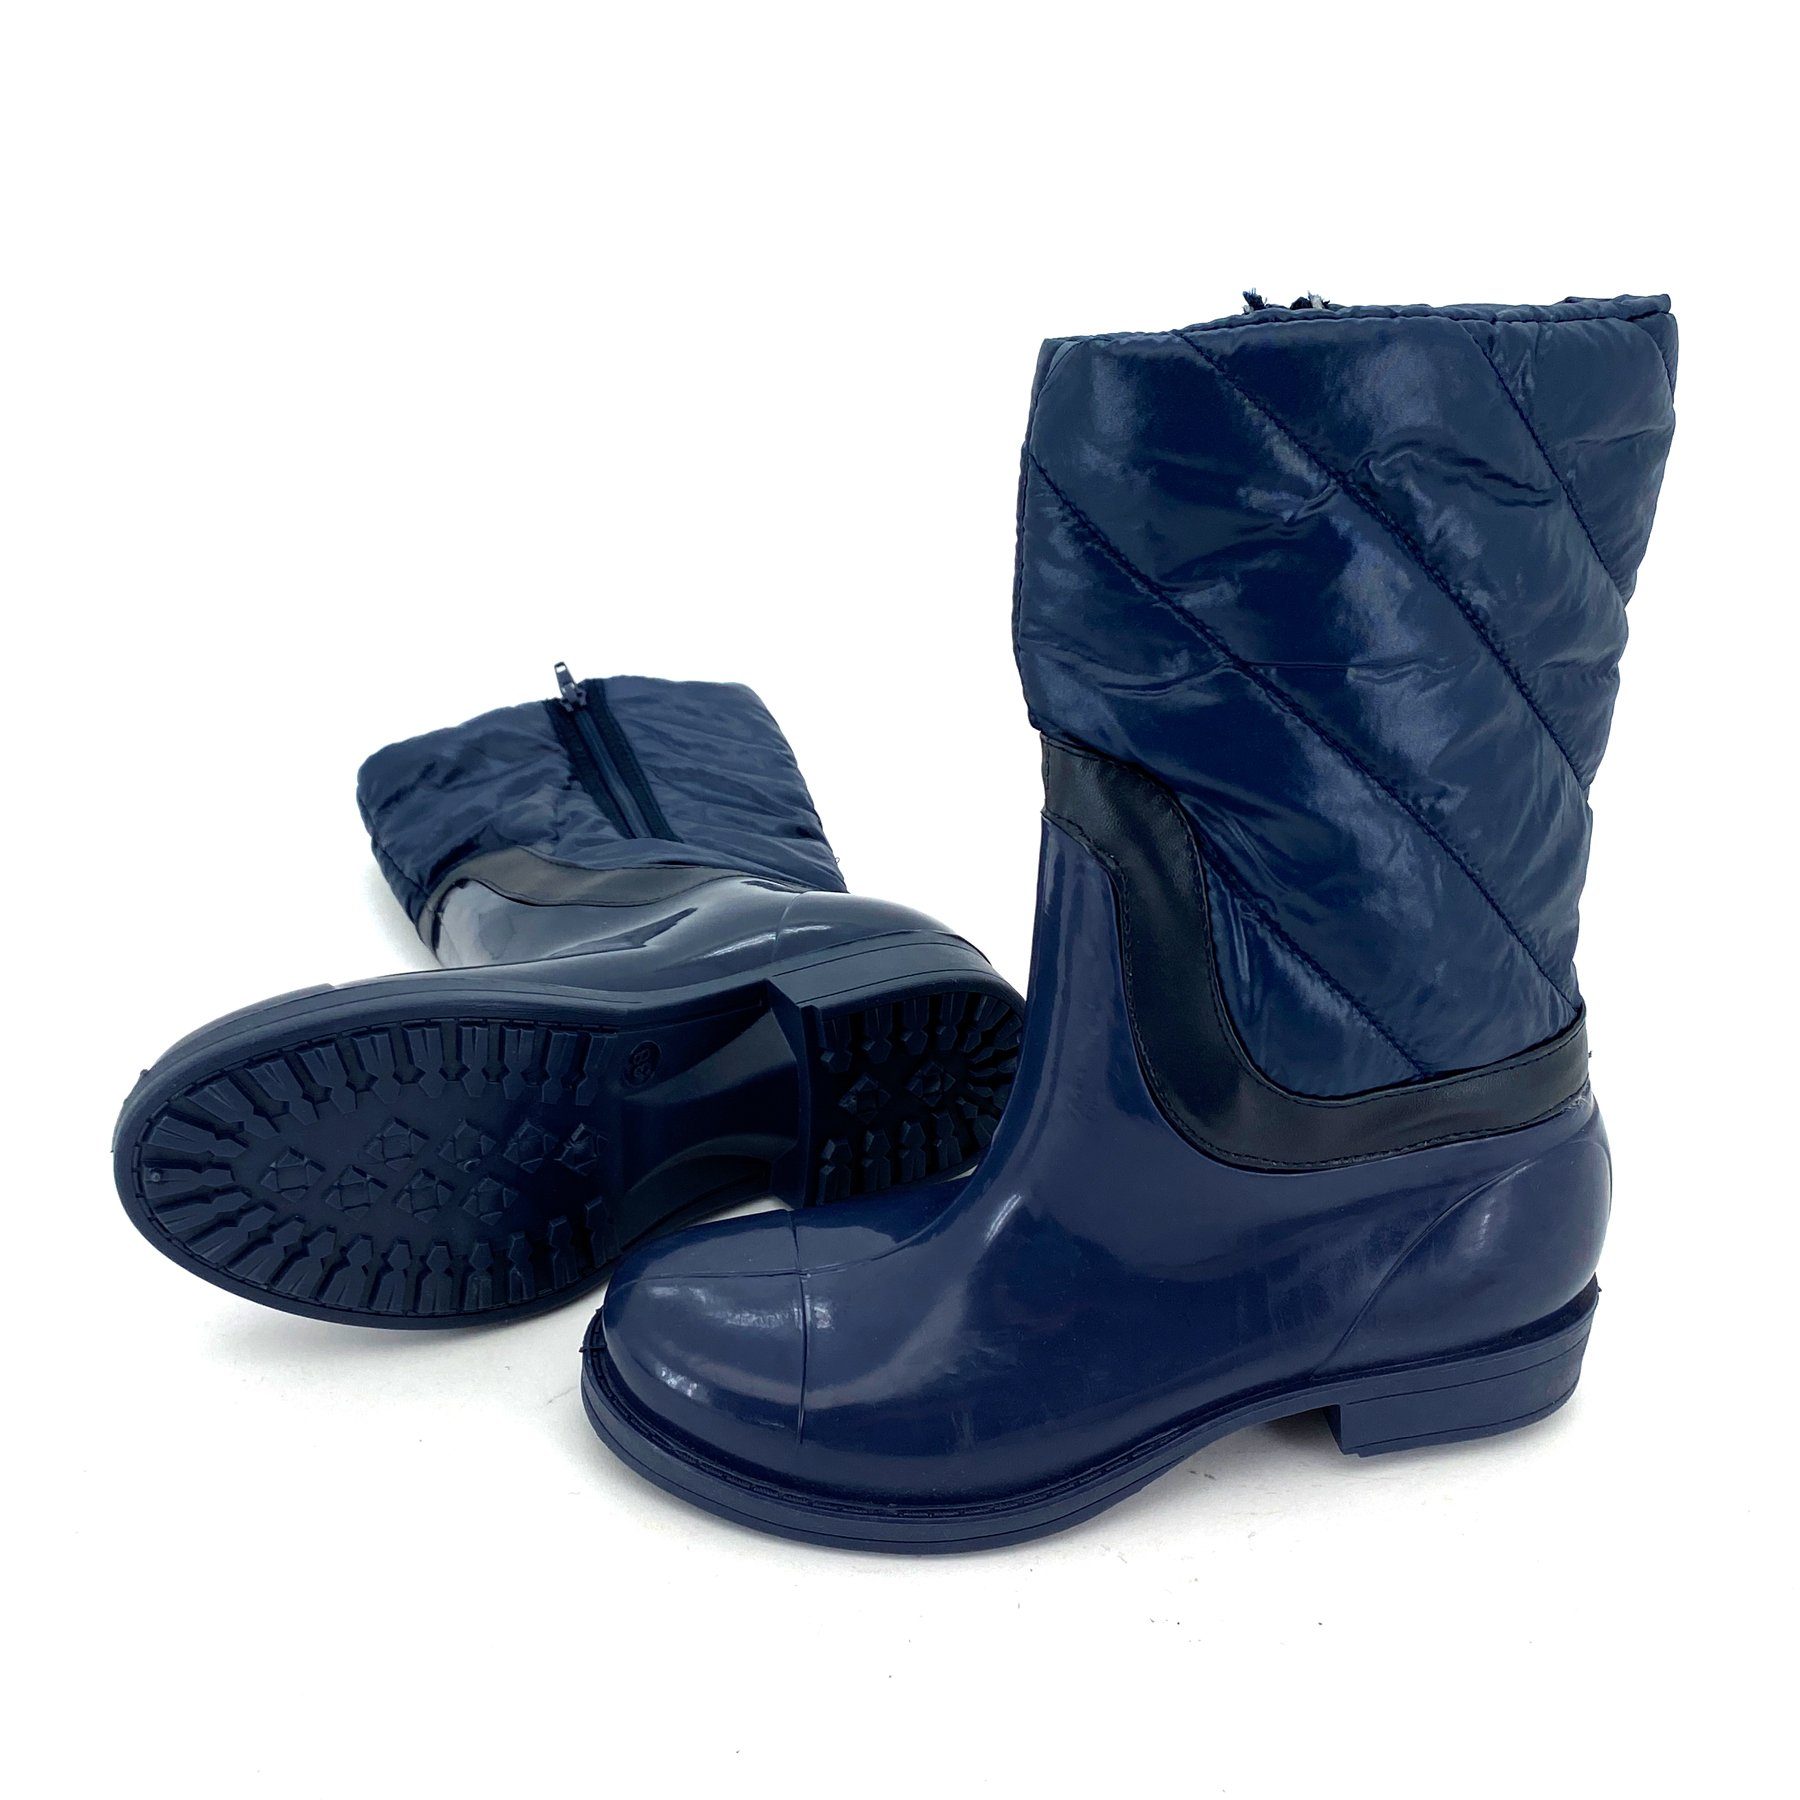 heimtexland Gummistiefel Daunen Stiefel Hochschaft Trend Boots Gummistiefel (Typ880) gesteppt I wasserdicht I Damen Mädchen Regenstiefel Blau